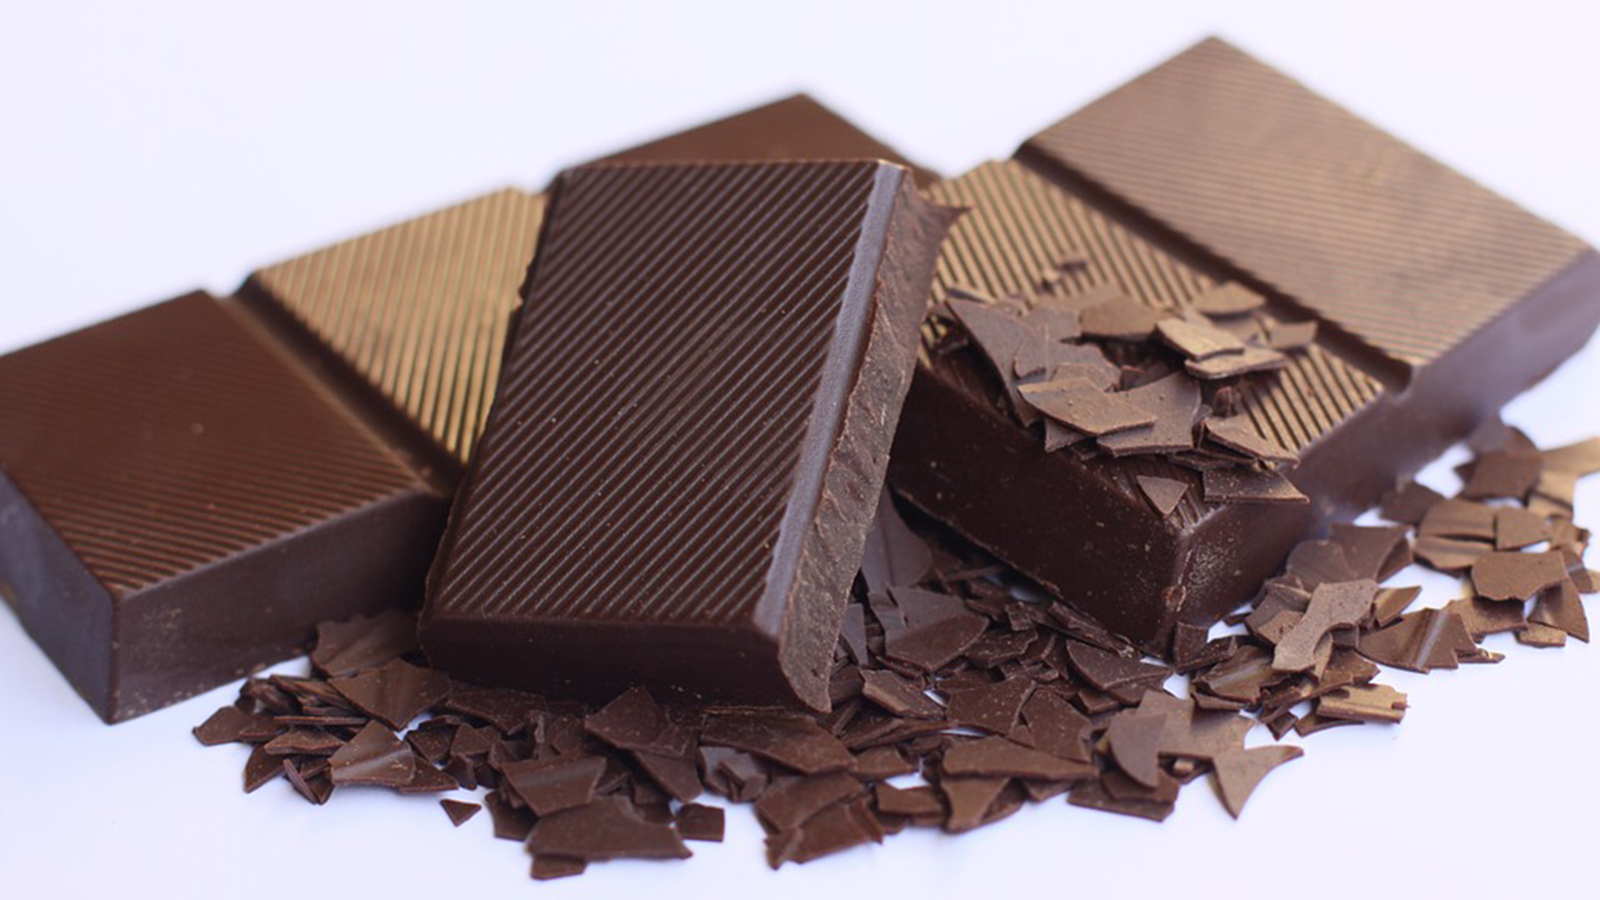 ‪يُفضل اختيار لوح الشوكولاتة الداكنة التي يحتوي على أقل عدد من المكونات‬ يُفضل اختيار لوح الشوكولاتة الداكنة التي يحتوي على أقل عدد من المكونات (بيكسابي) 